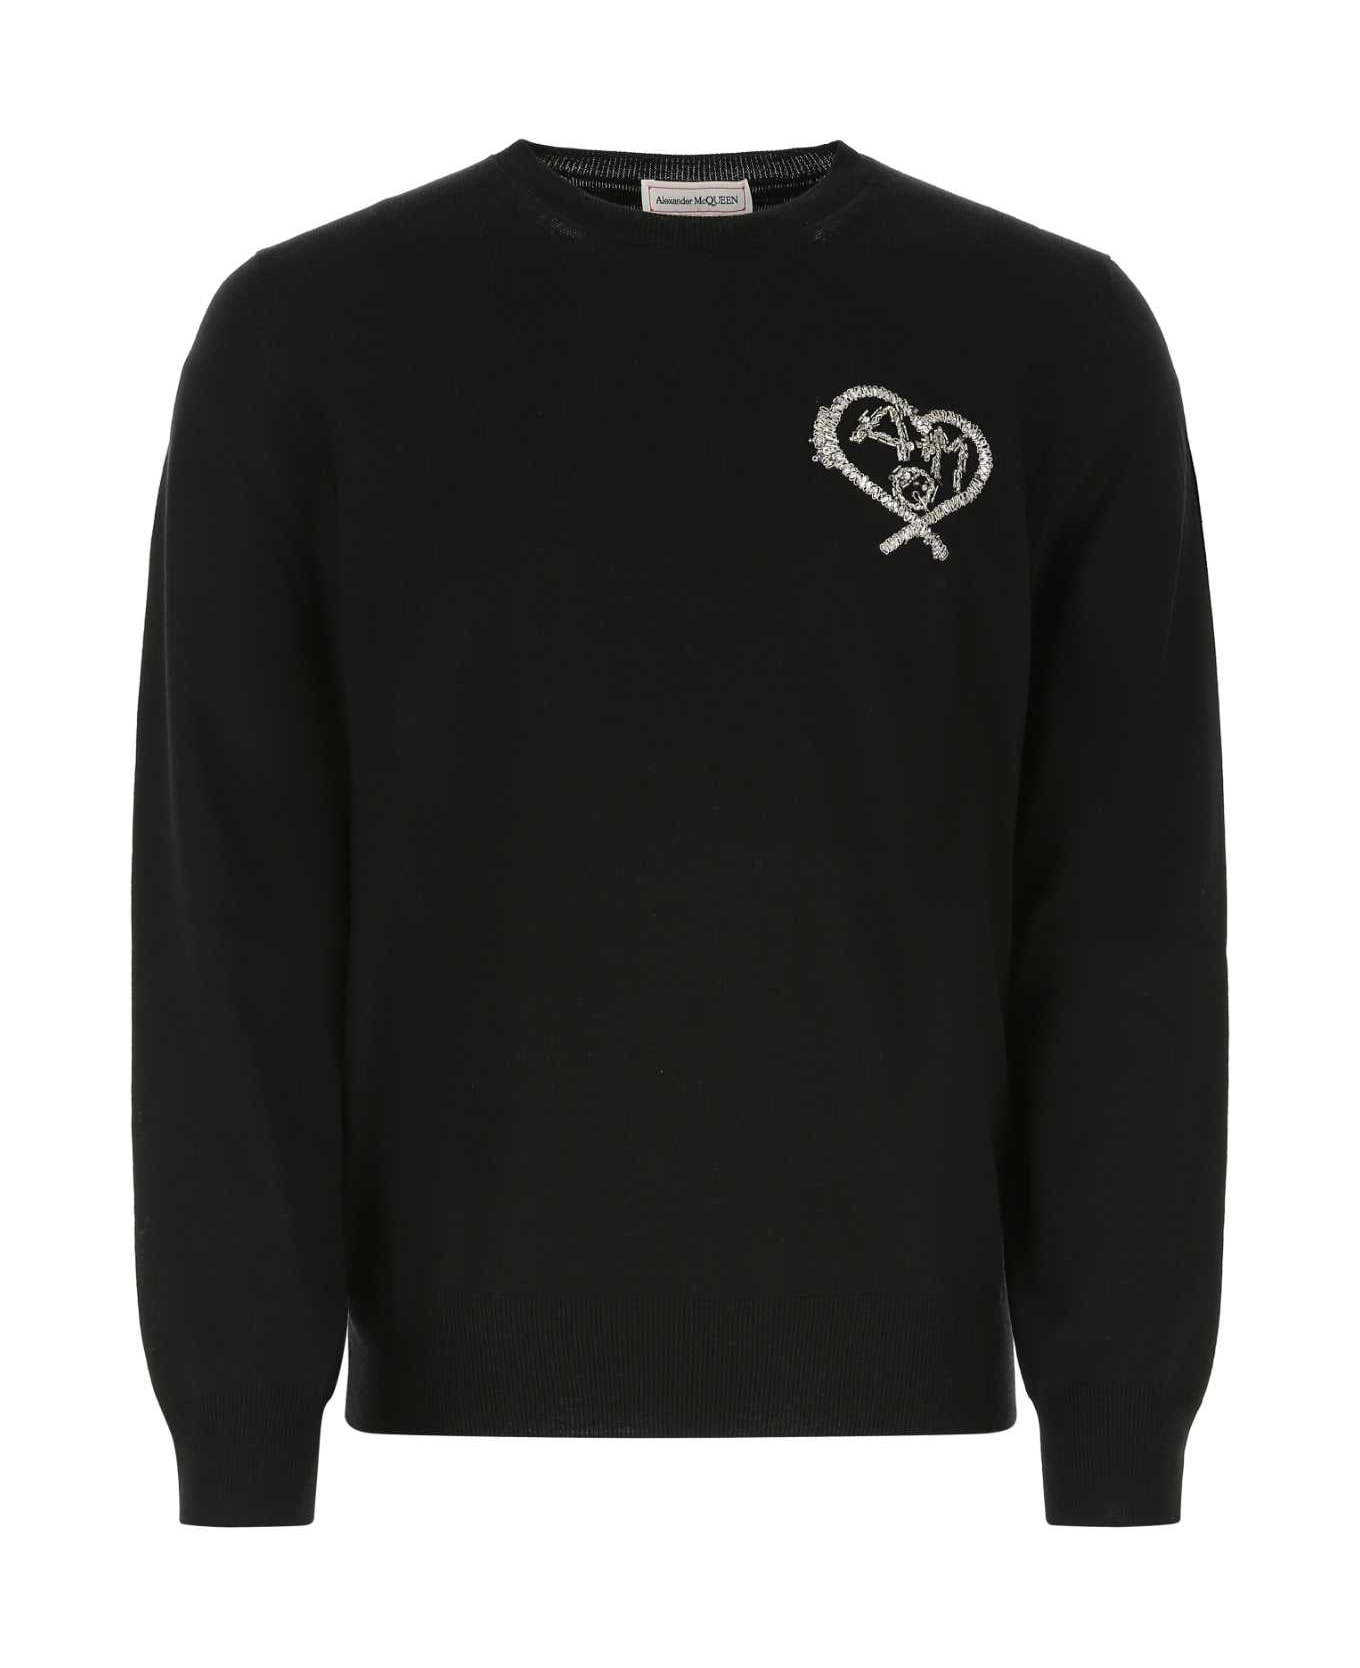 Alexander McQueen Black Wool Sweater - 1057